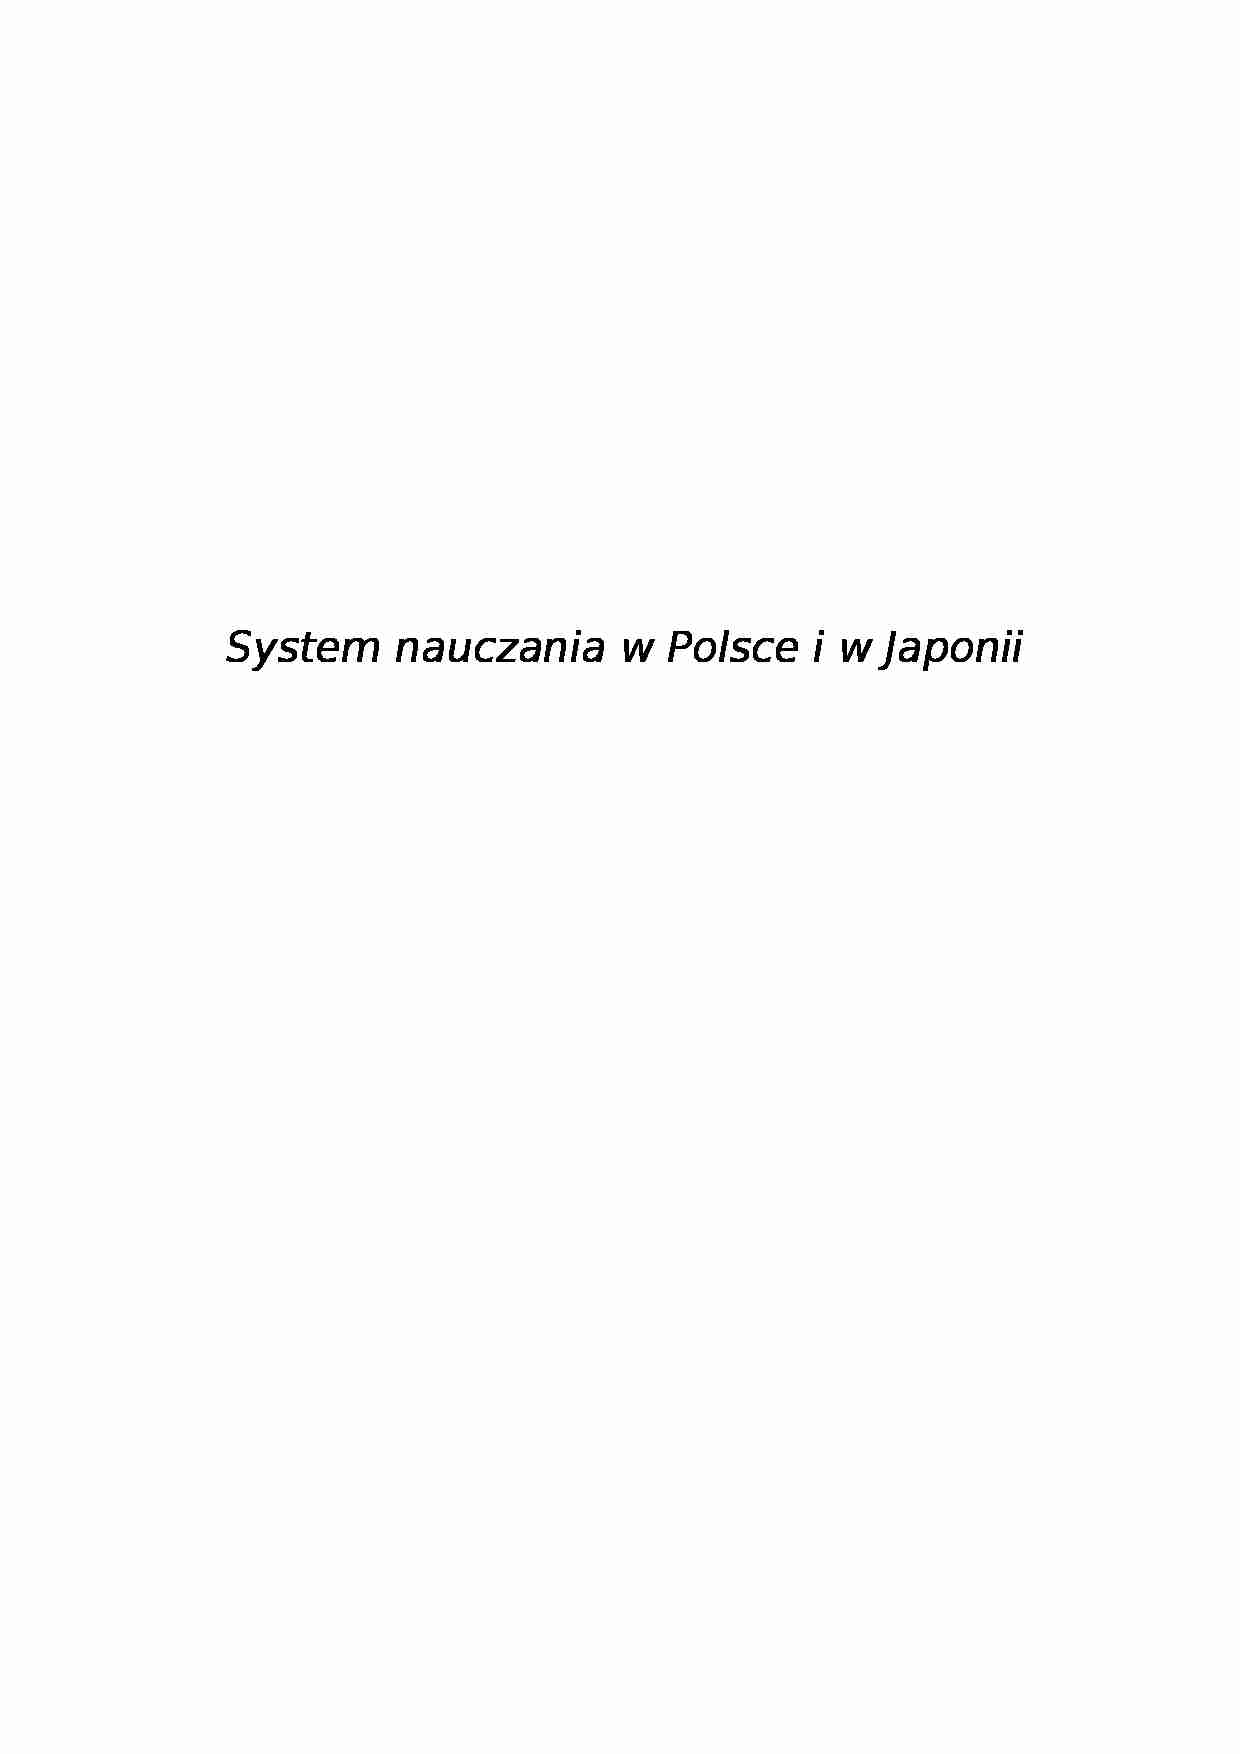 System nauczania w Polsce i w Japonii- pedagogika - strona 1